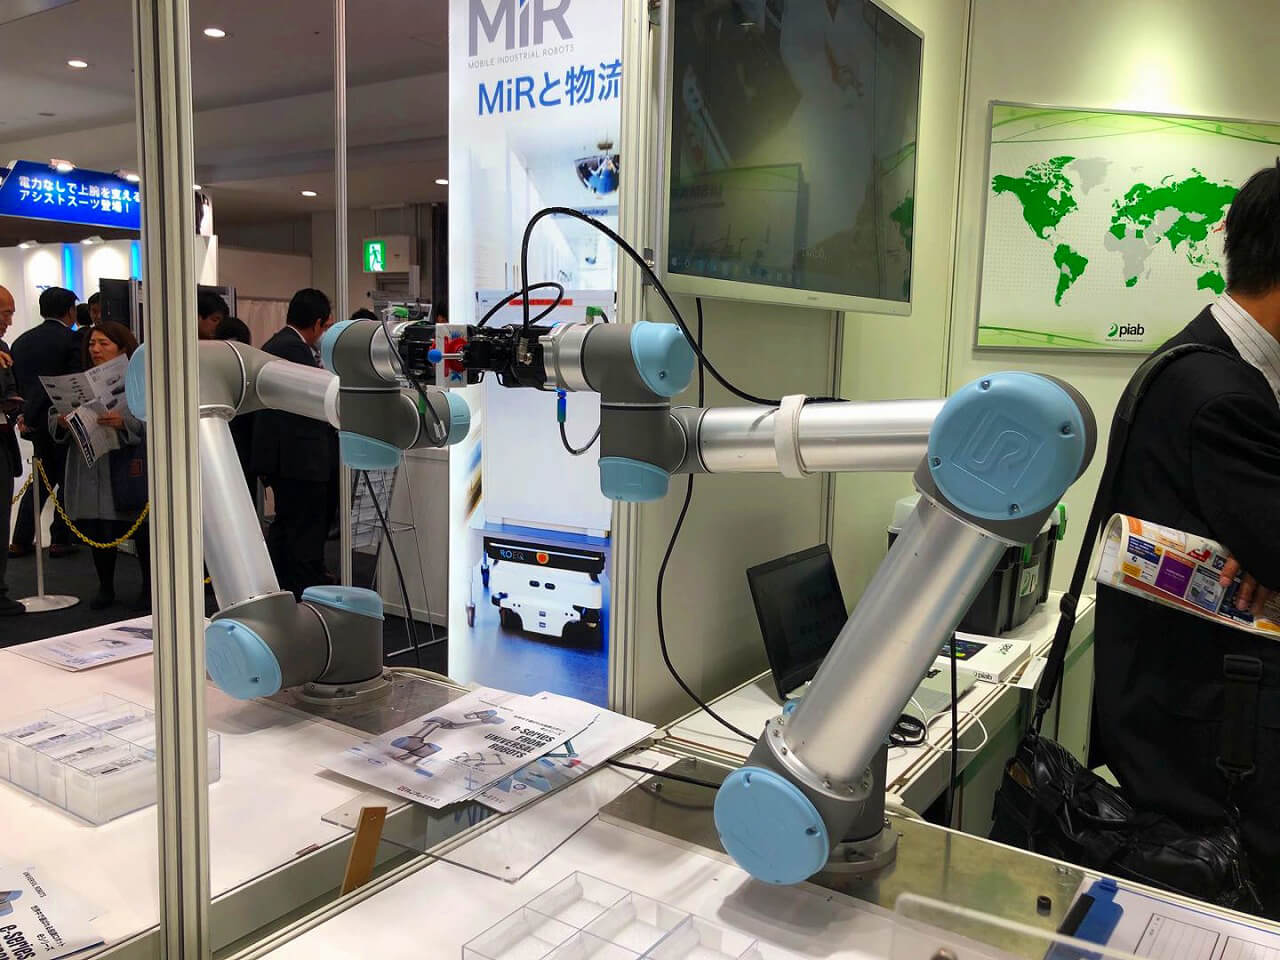 新型机器人解决方案引领东京RoboDEX展 多机械臂协同作业